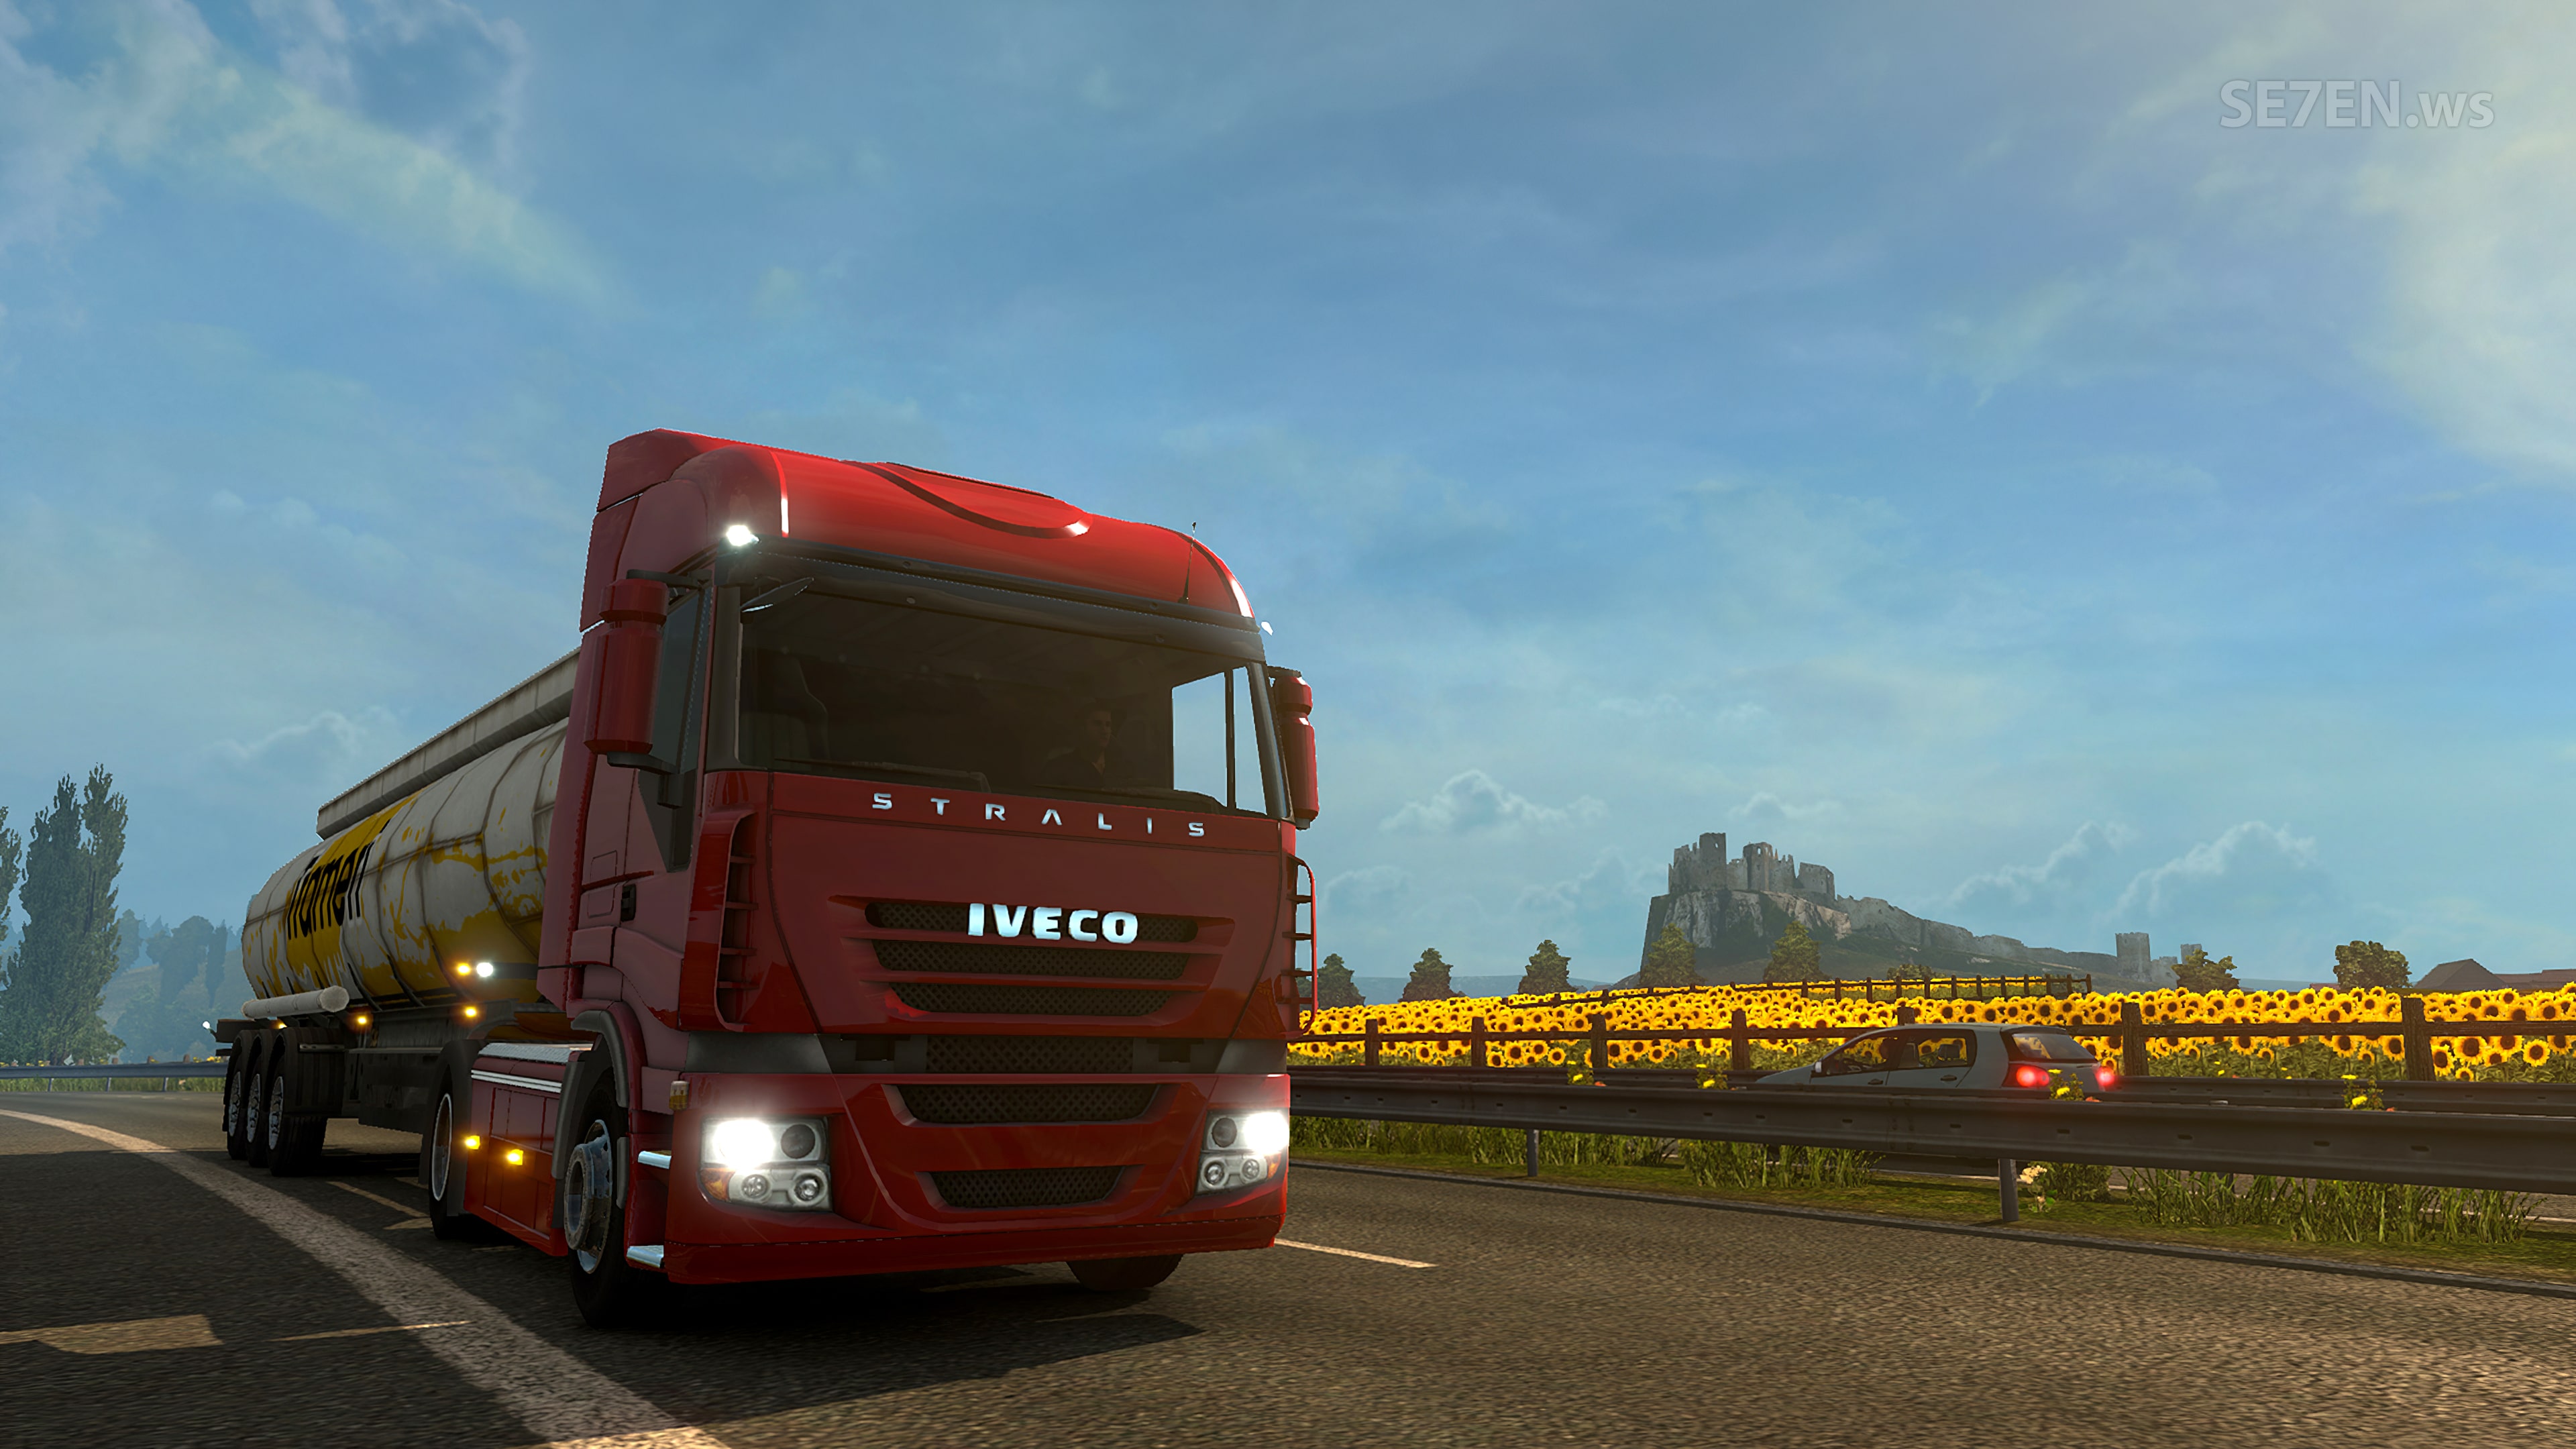 euro truck simulator 2 pc completo